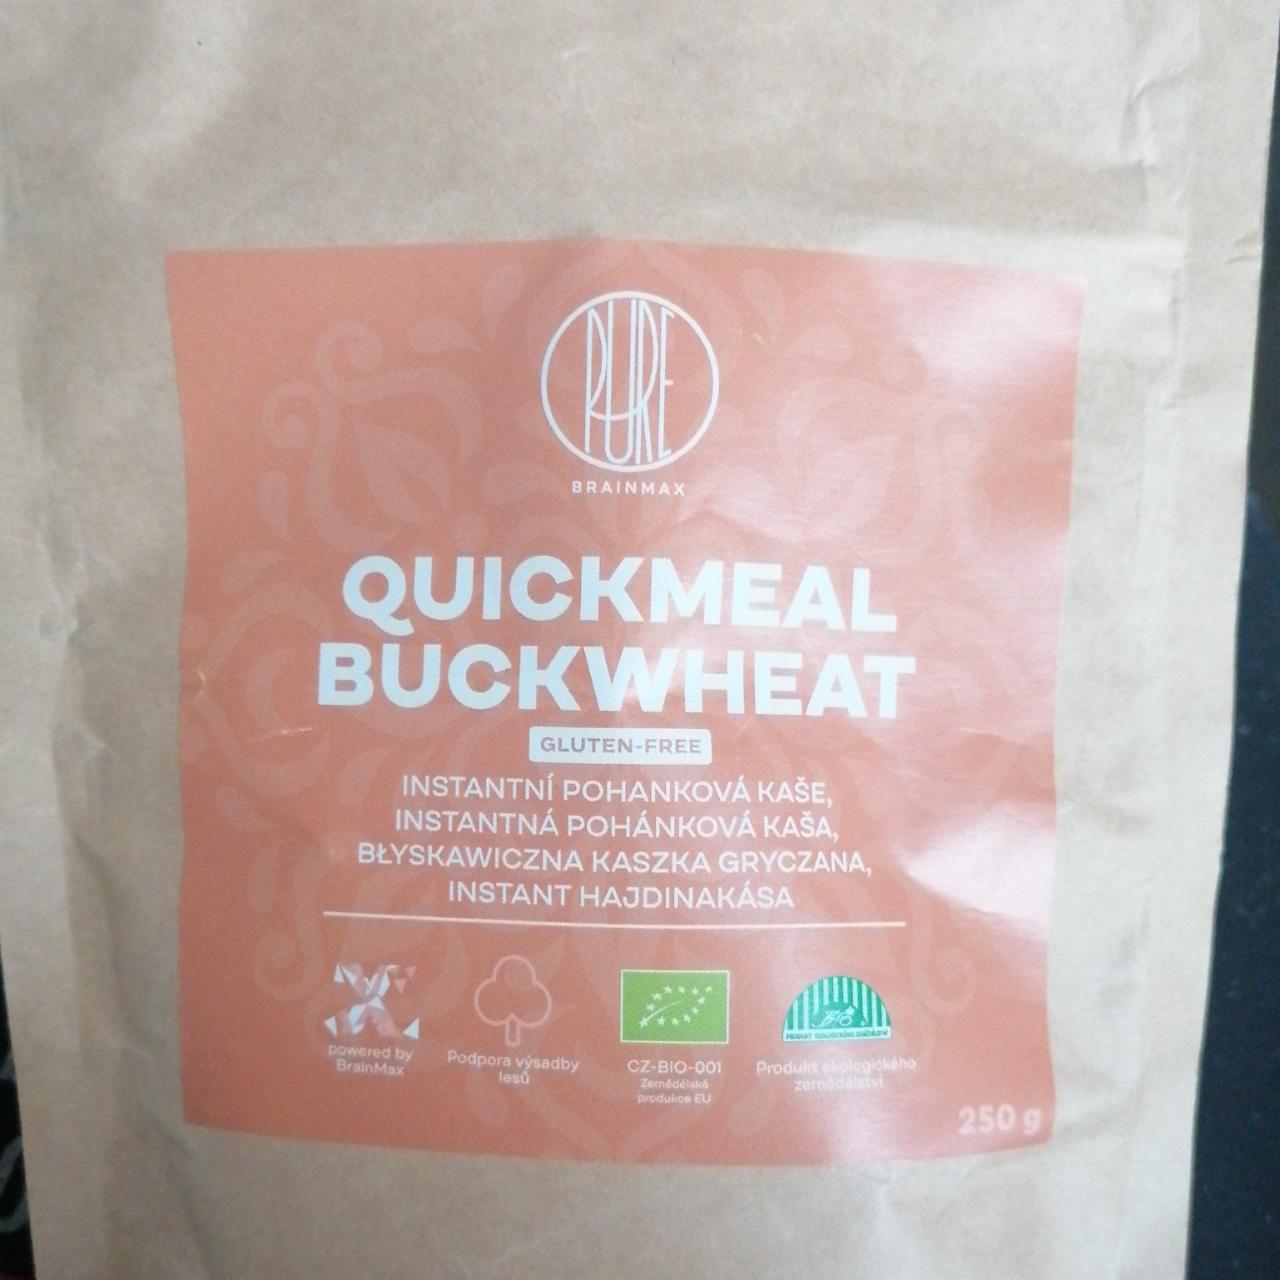 Fotografie - Quickmeal buckwheat Instantní pohanková kaše BrainMax